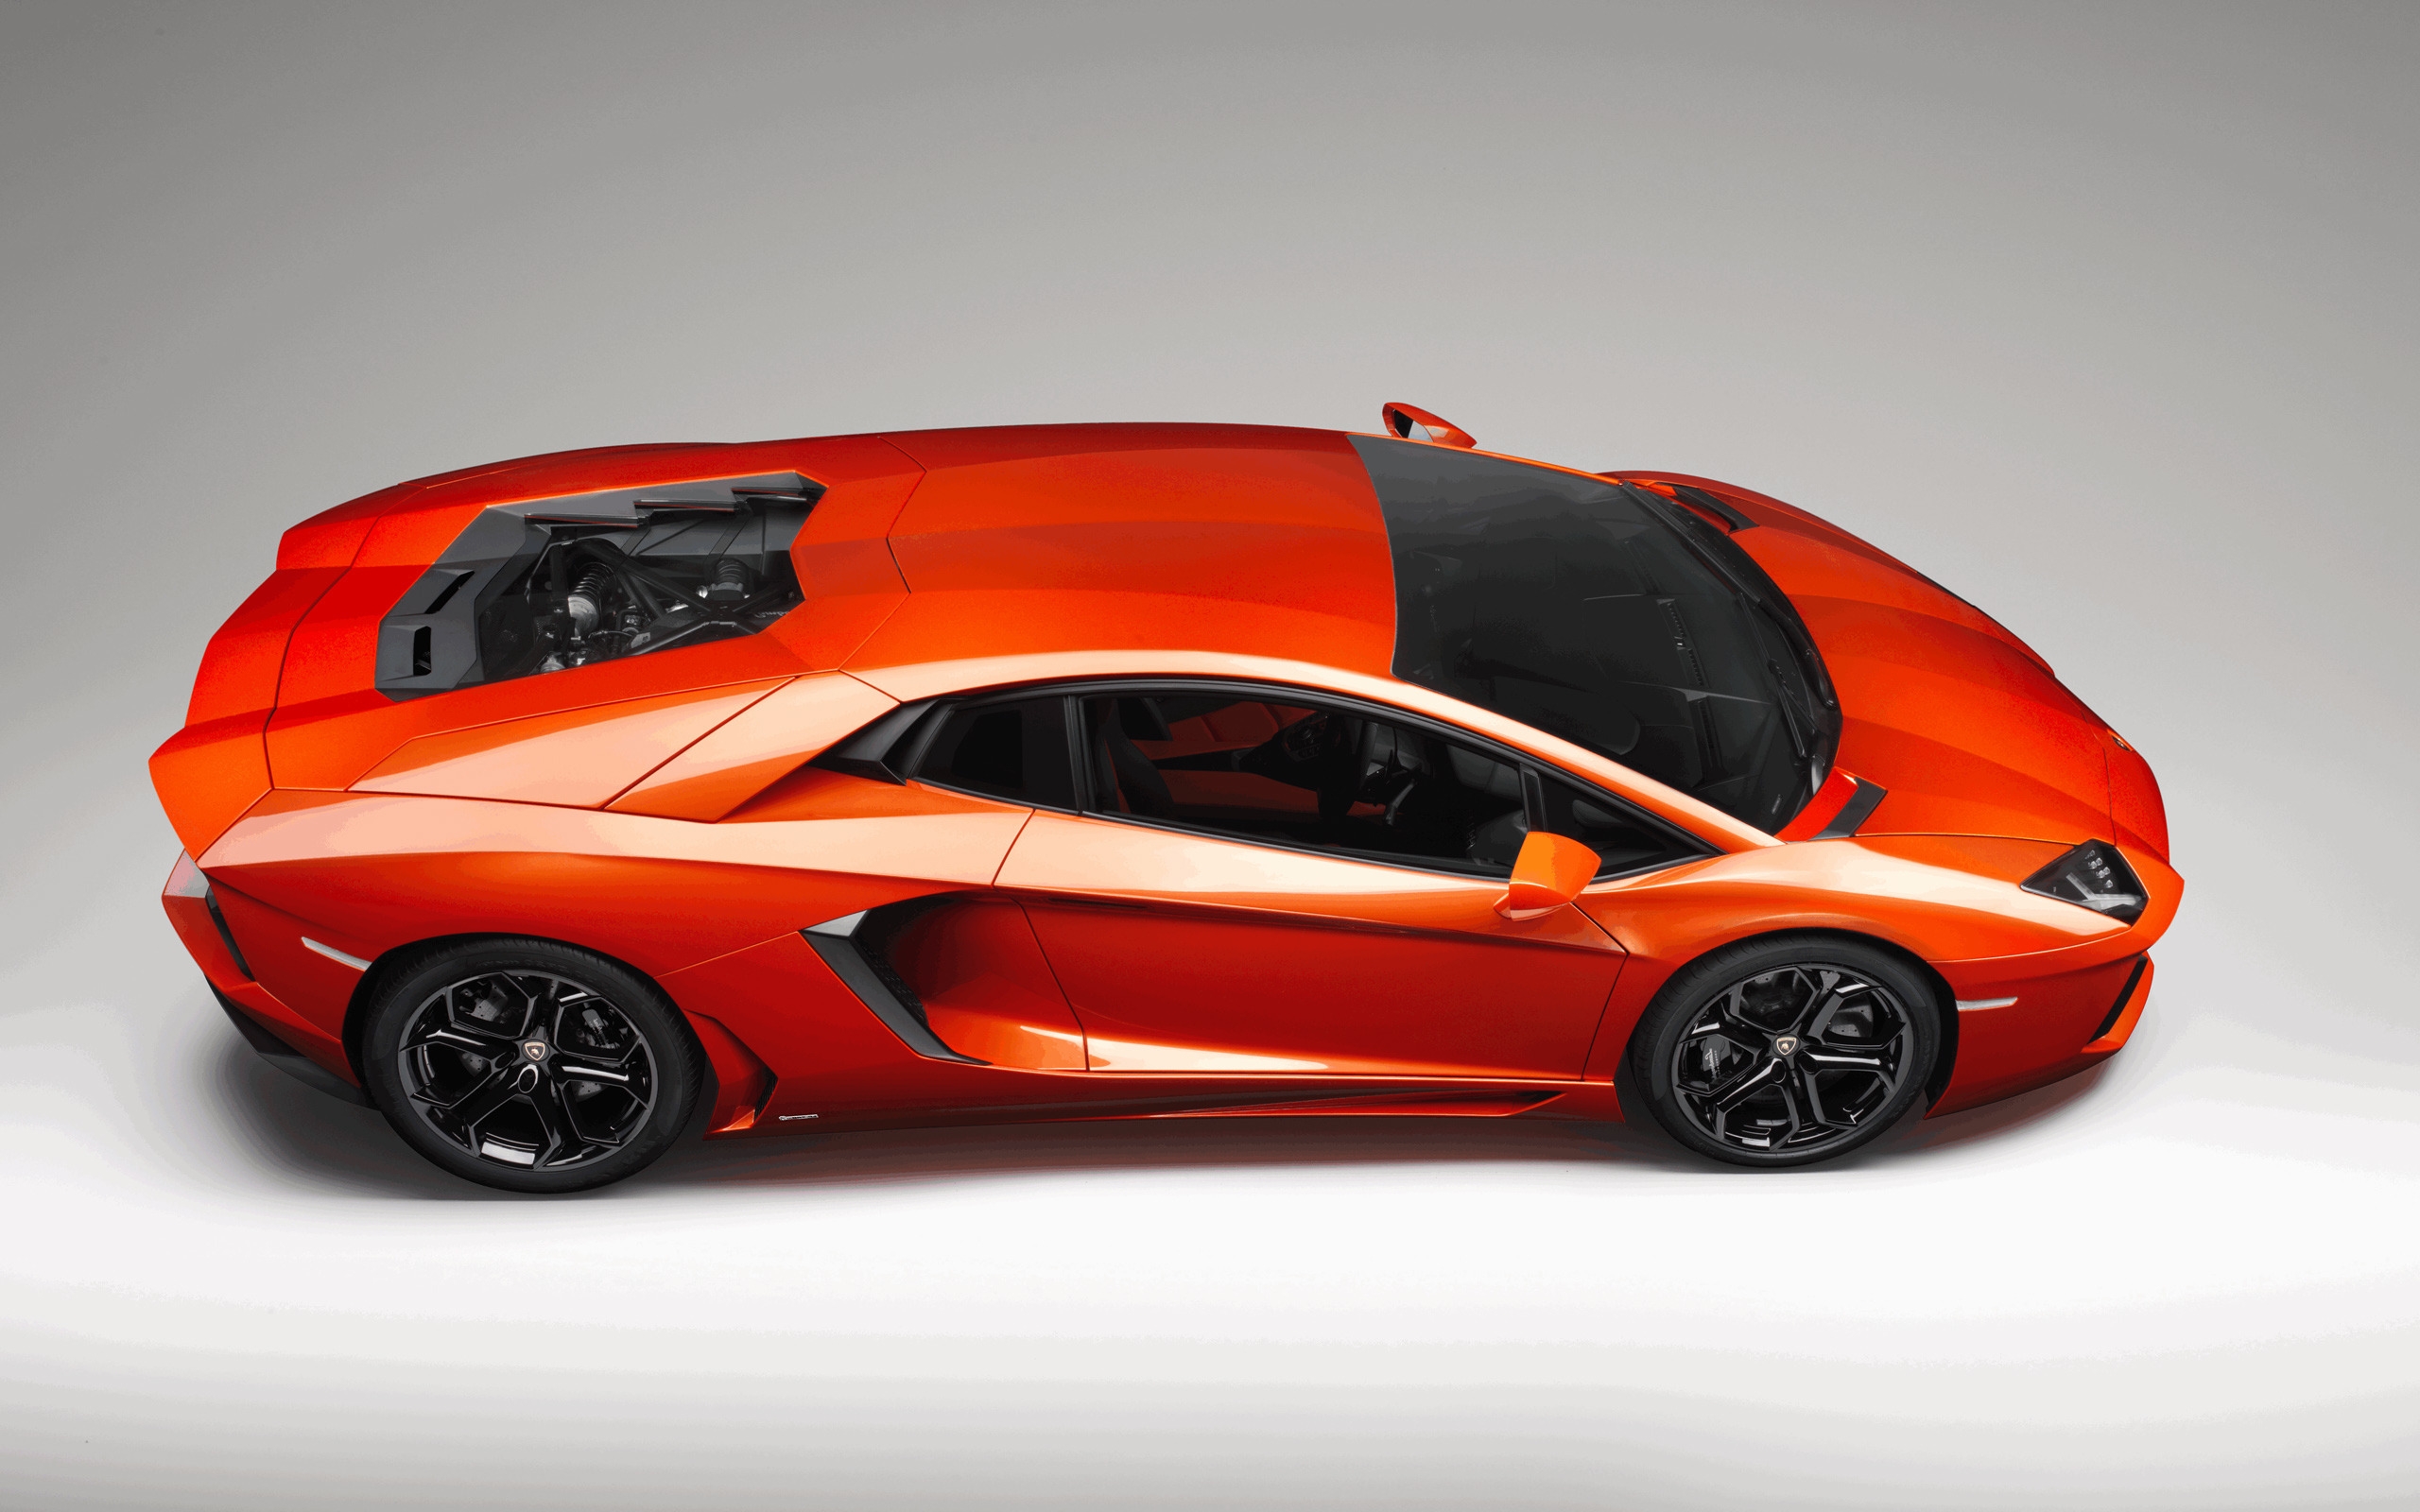 Lamborghini Aventador Studio for 2560 x 1600 widescreen resolution